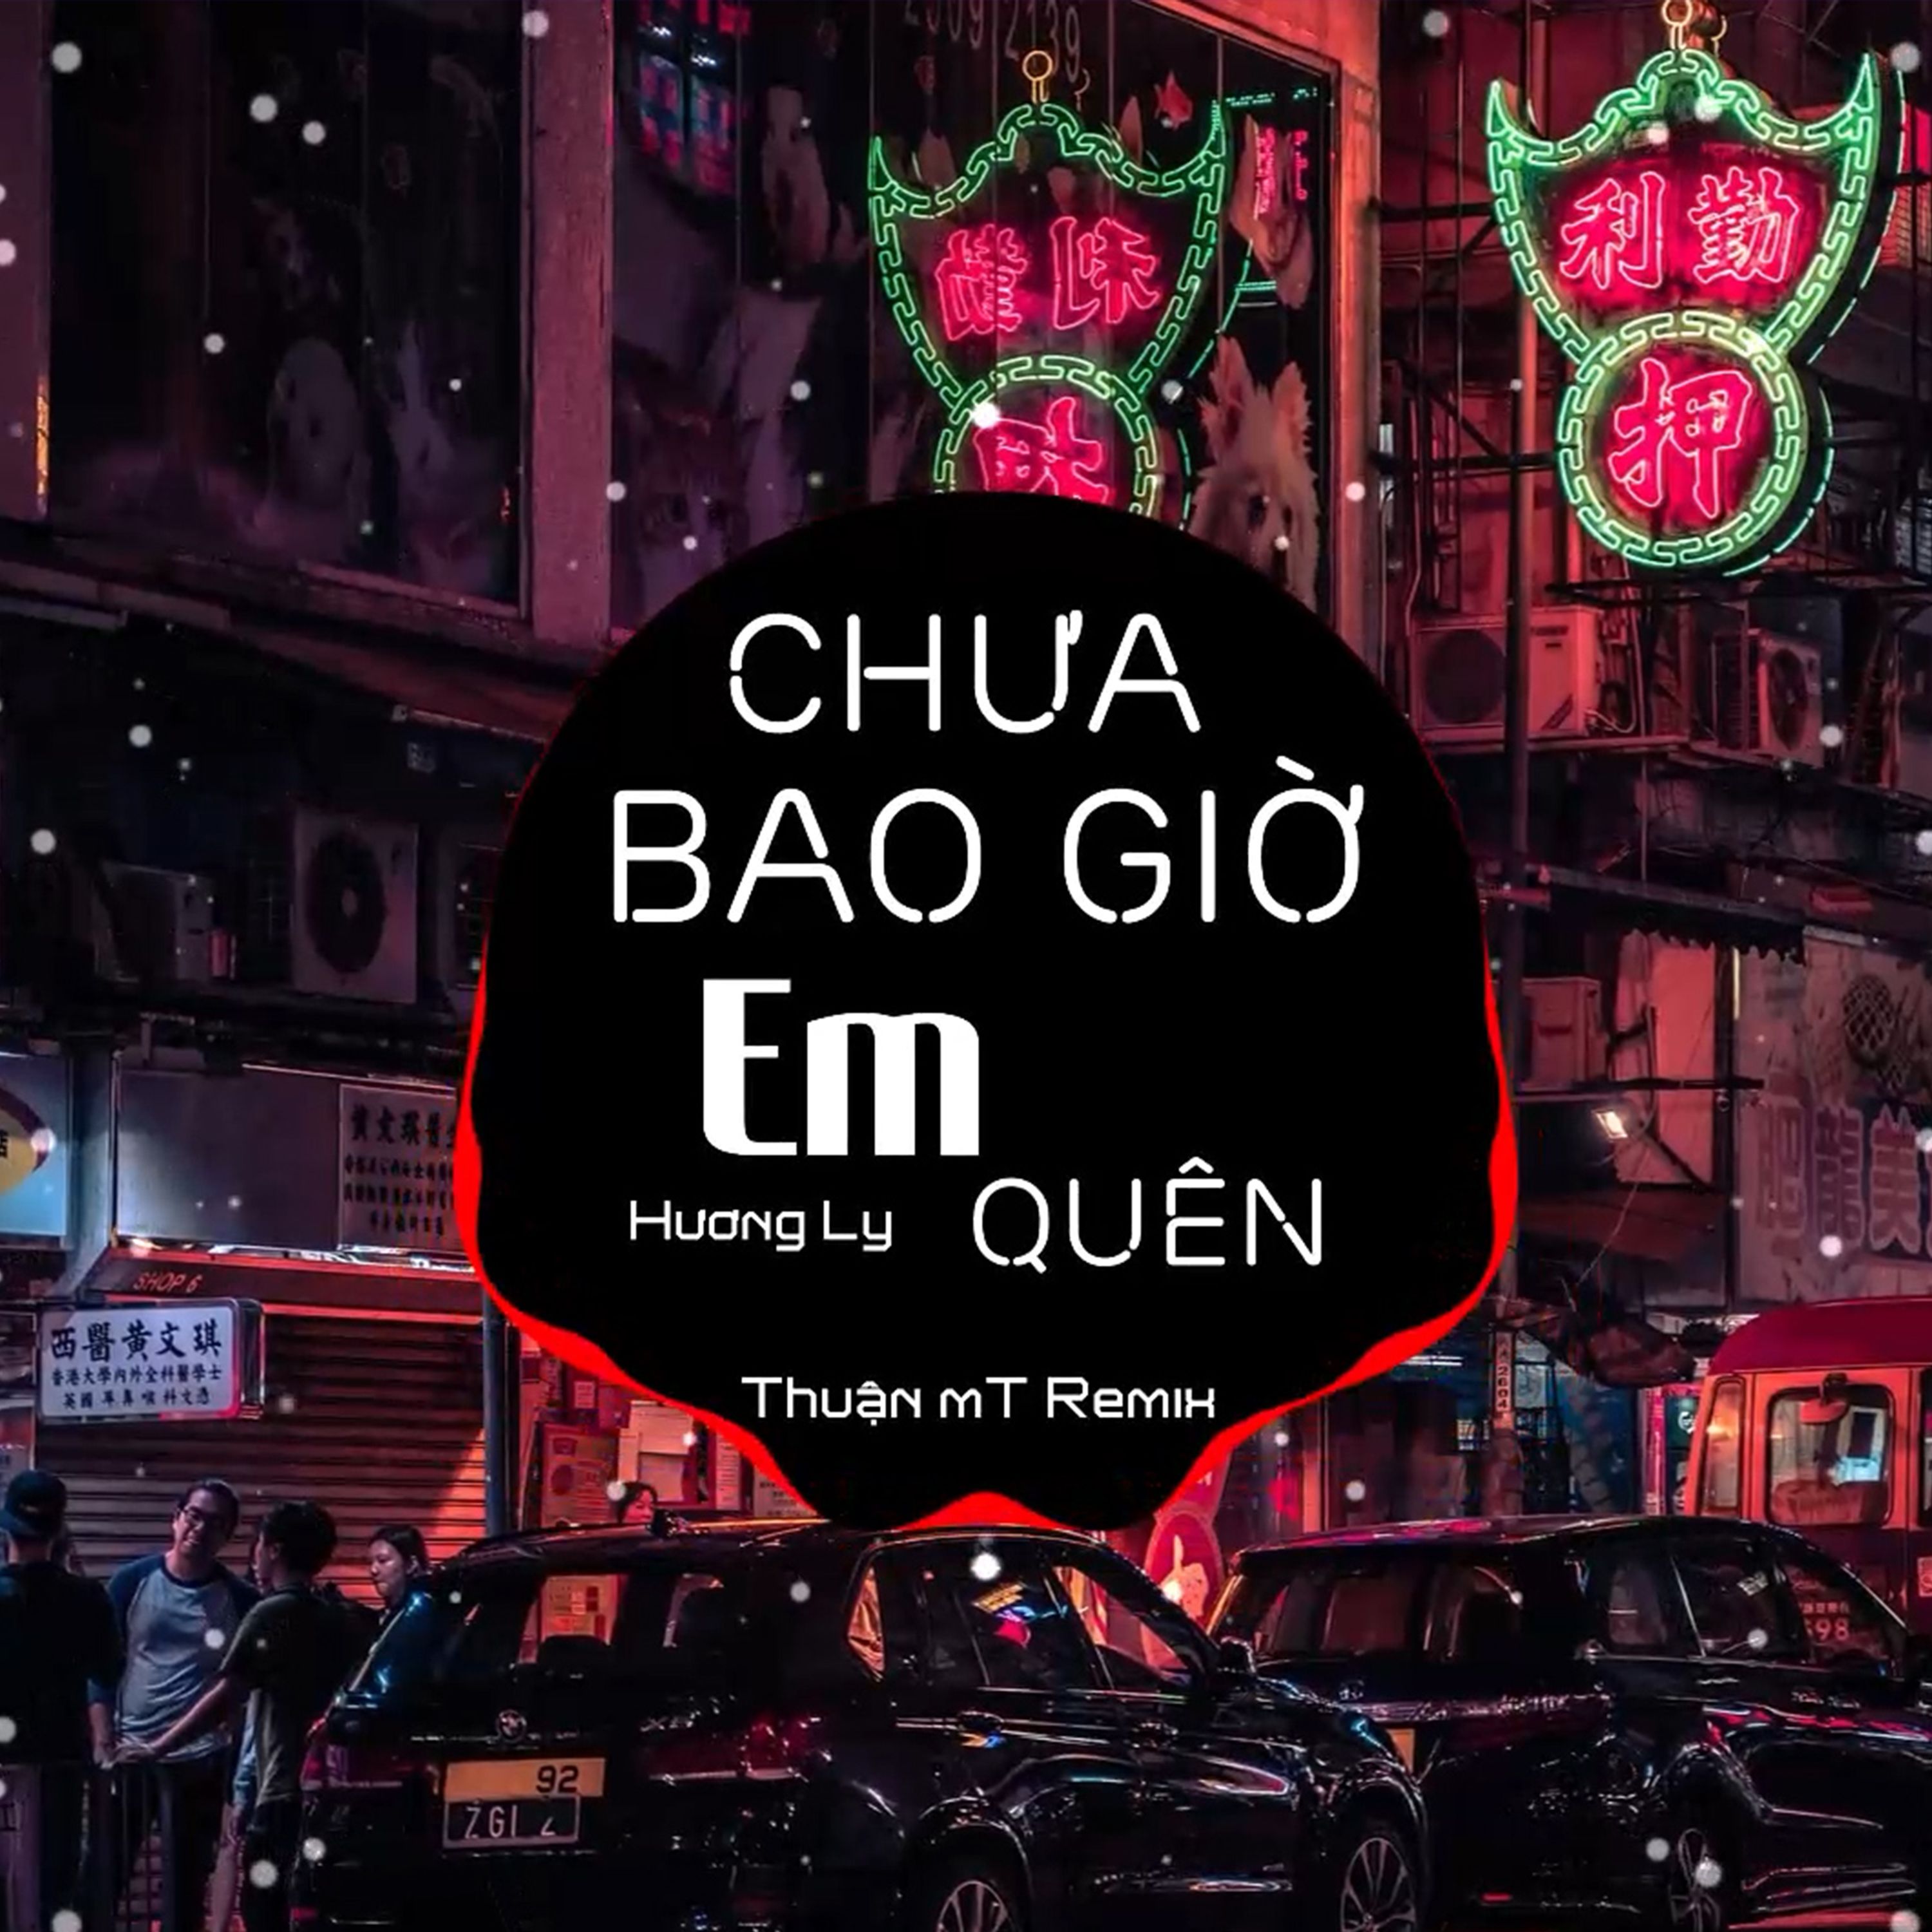 Download Chưa Bao Giờ Em Quên ( Thuận mT Remix ) Ver 2 - Hương Ly | Nhạc Nền Chill Phiêu Nhất TikTok  2021